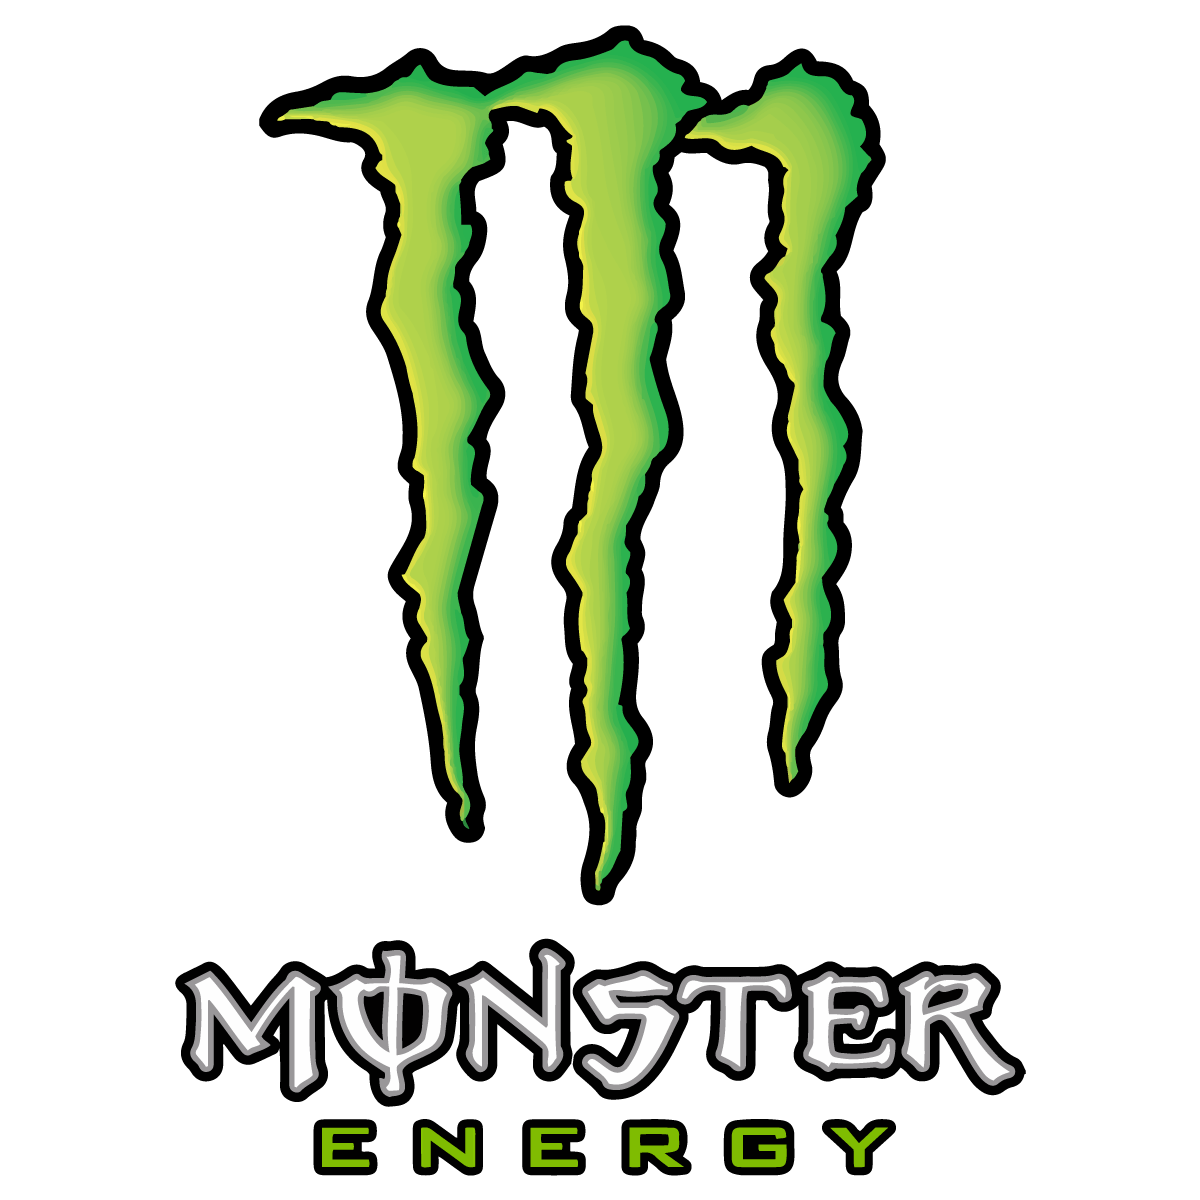 Monster Energy Logo - Monster Energy Logo Vector Transparent Vertical. Free Vector